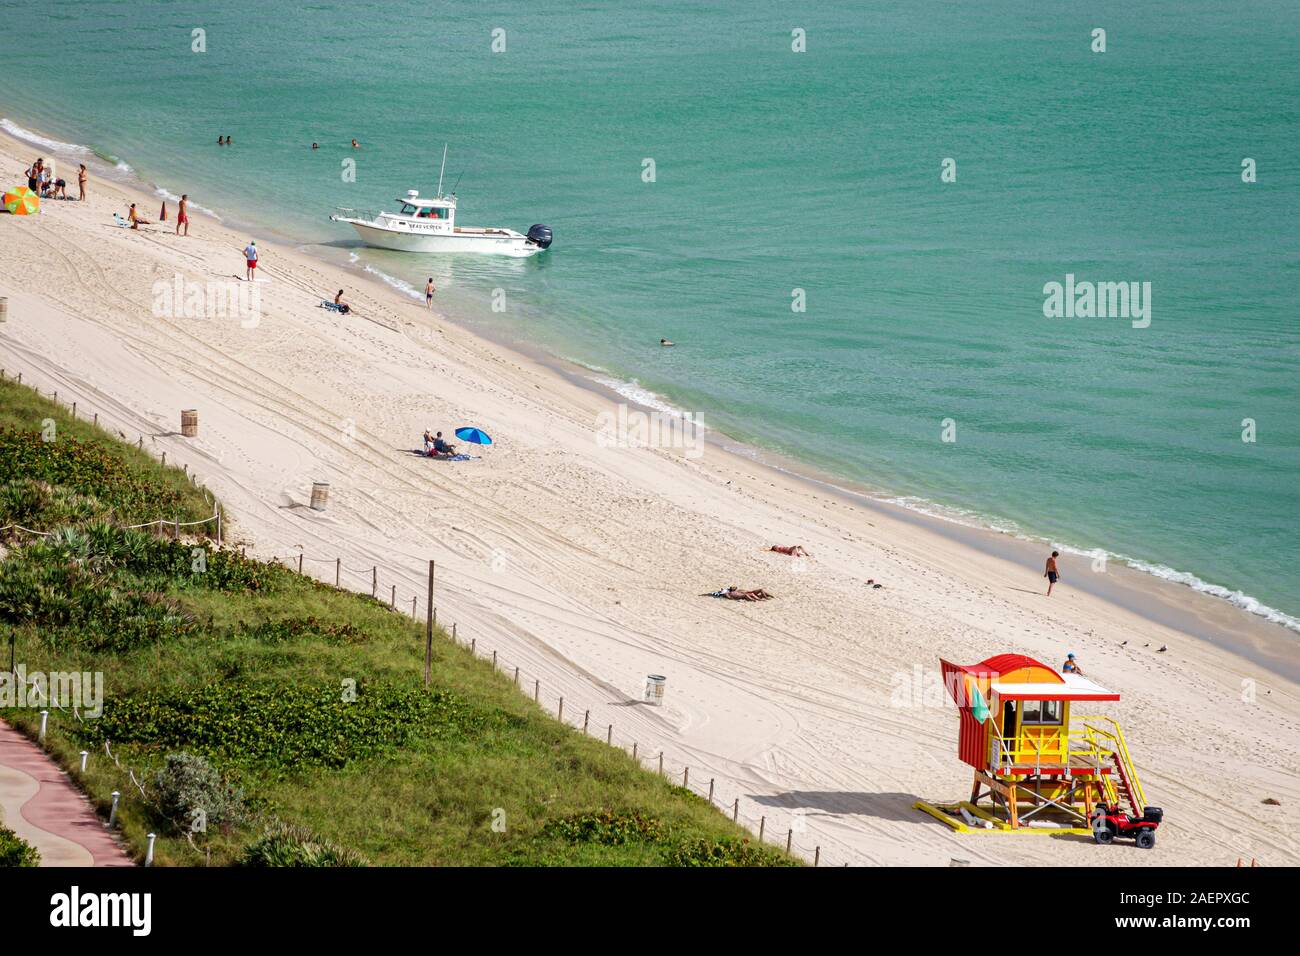 Miami Beach Florida,North Beach,rivage,sable,surf,stand de maître-nageur,dune,bains de soleil,bateau,bateau d'arpentage hydrographique,à venir à terre,public,Océan Atlantique Banque D'Images